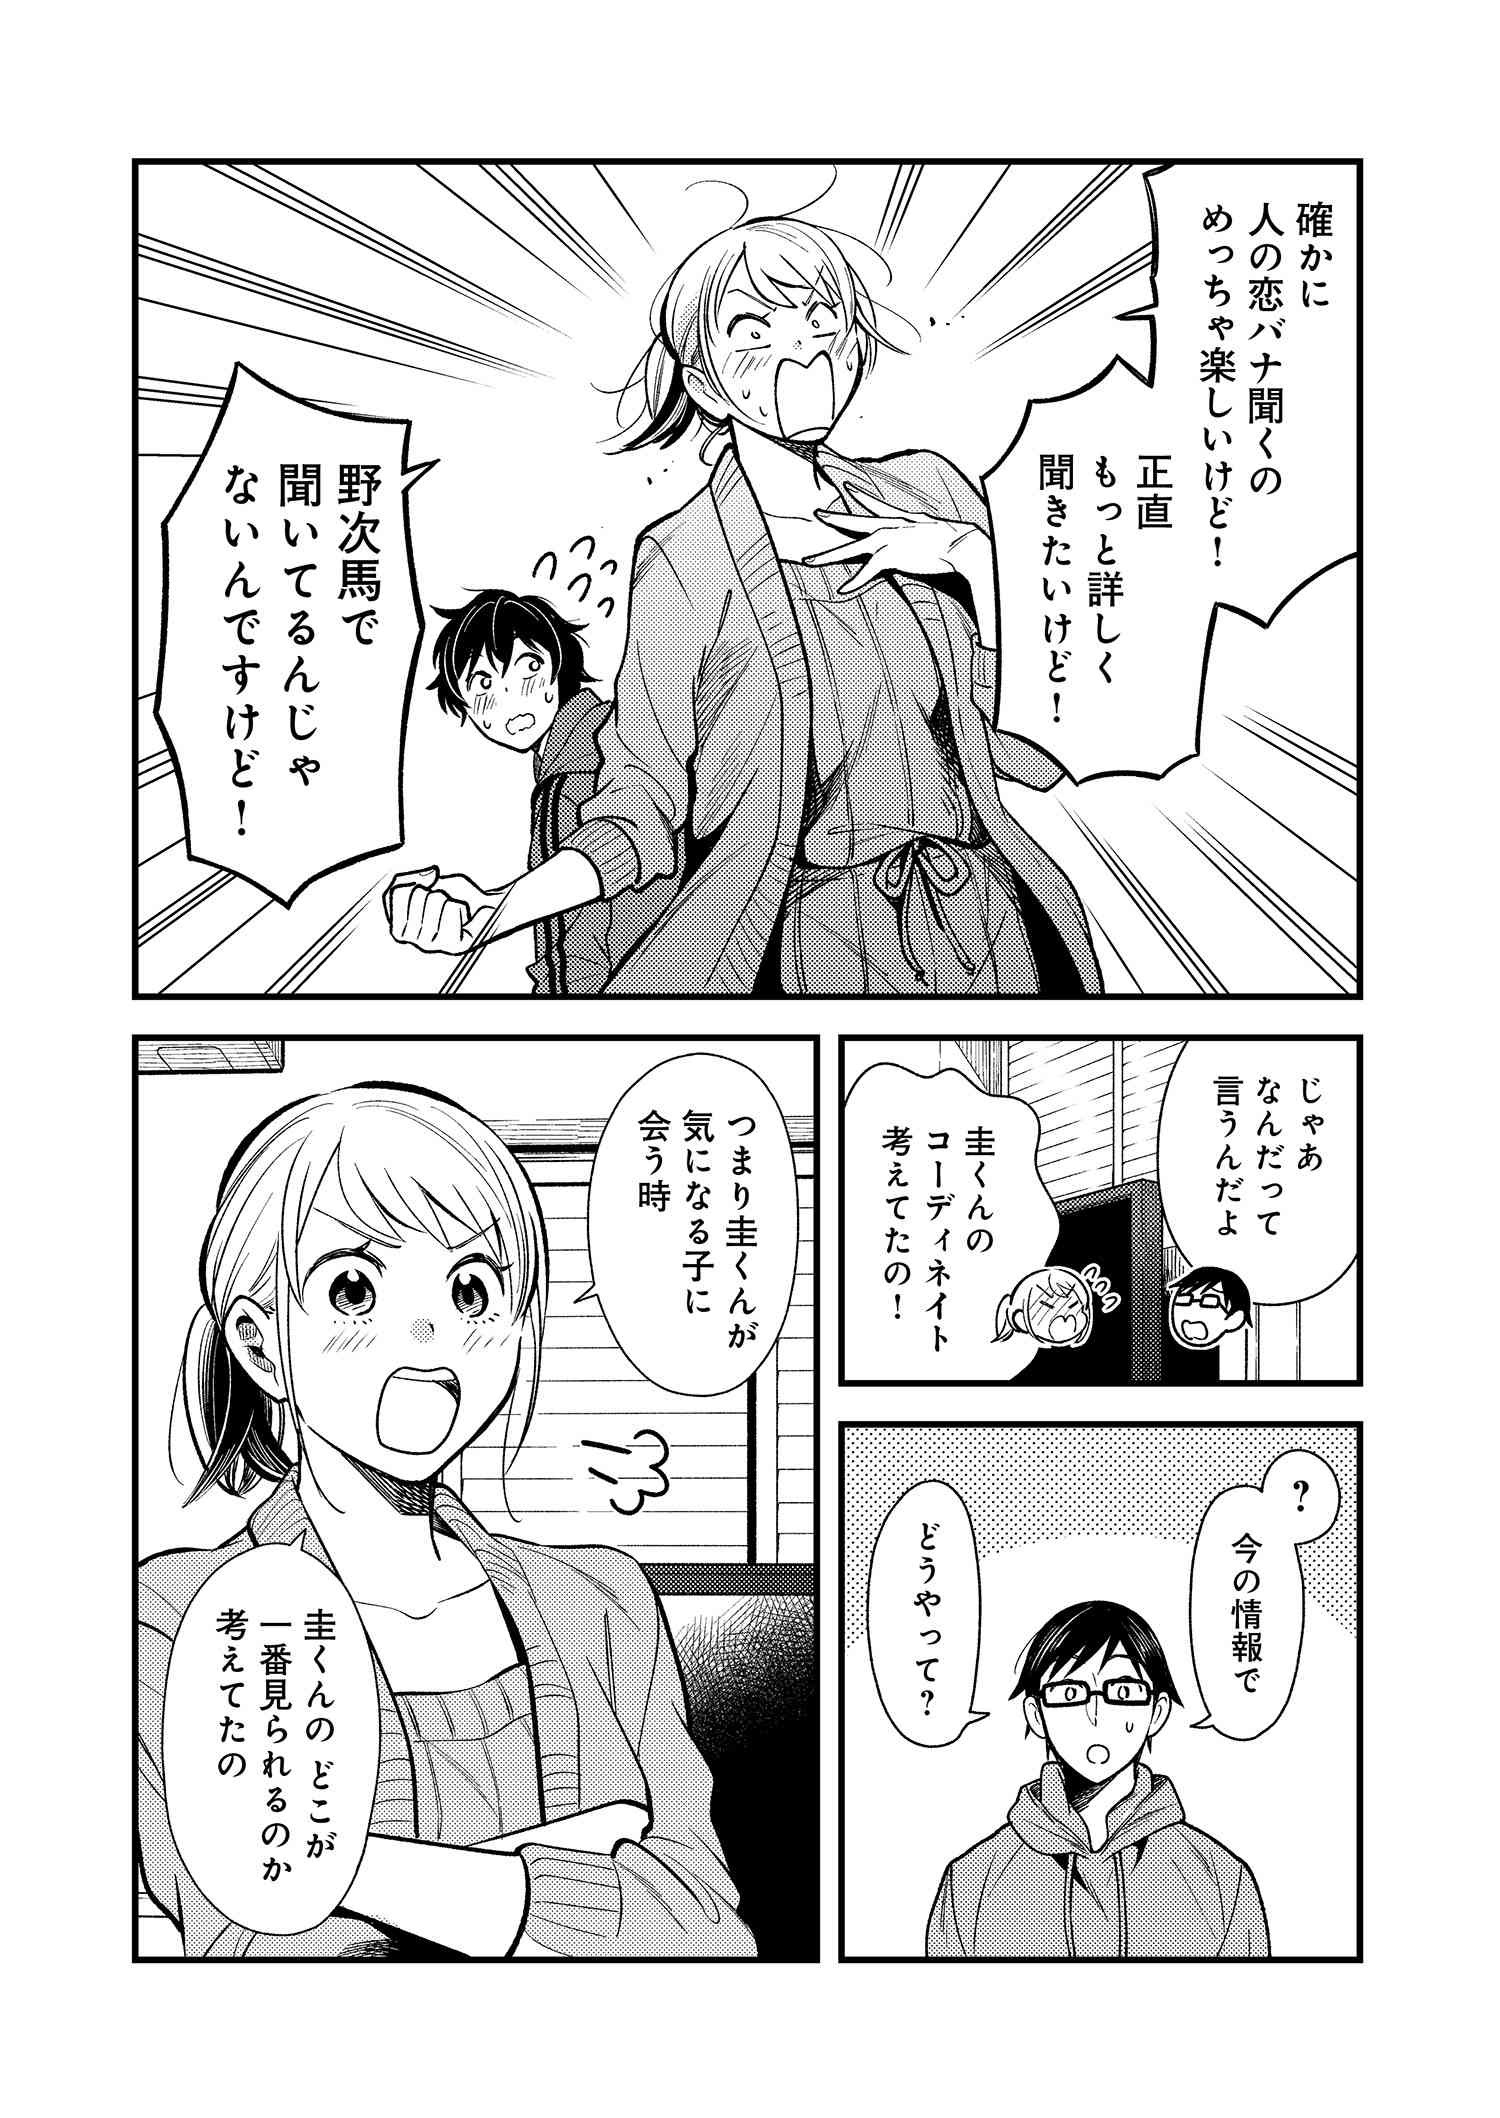 Fuku o Kiru Nara Konna Fuu ni - 服を着るならこんなふうに - Chapter 31 - Page 2